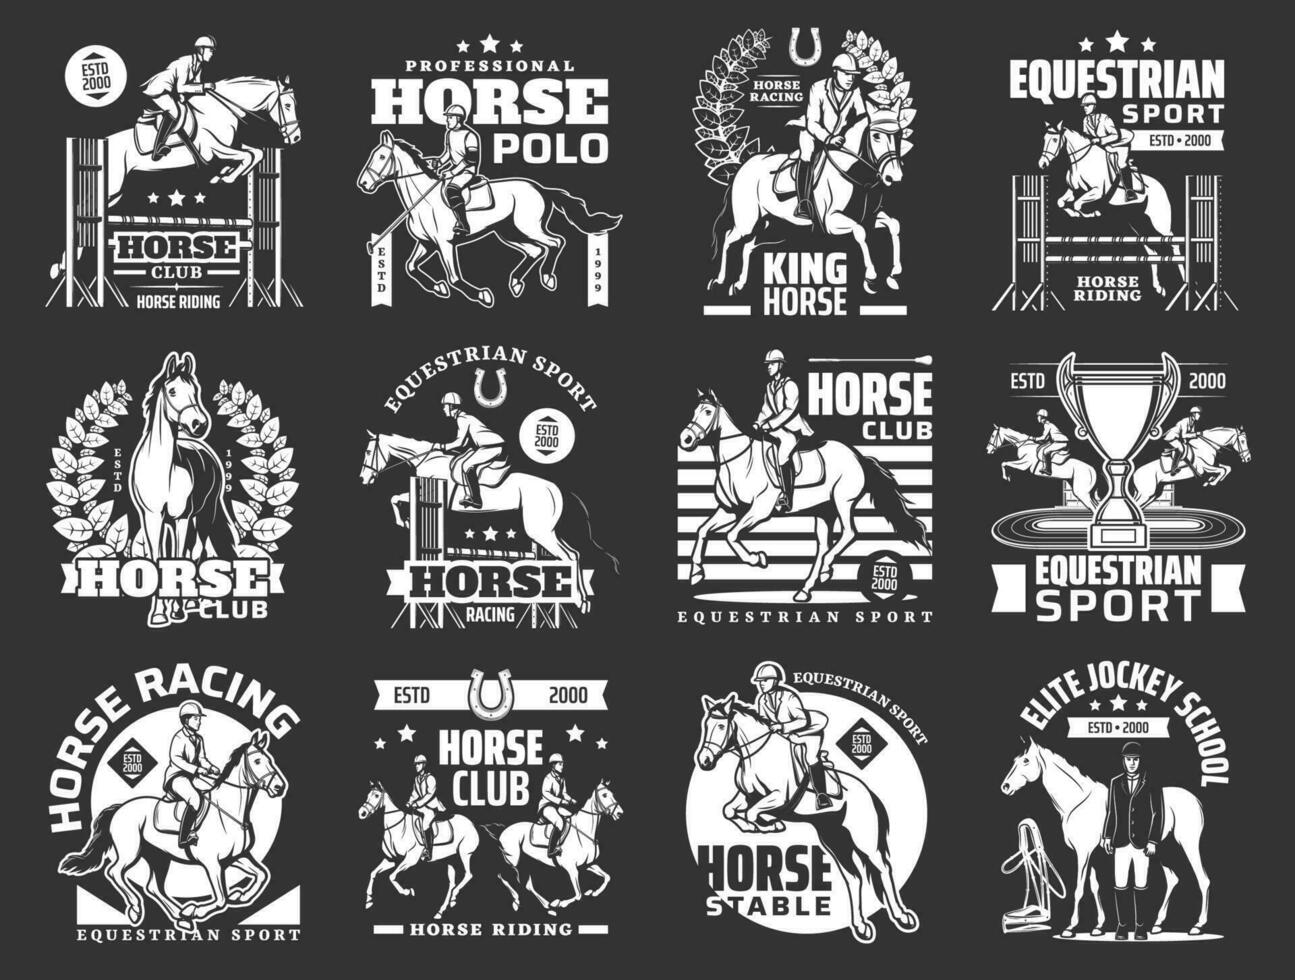 Equestrian sport icons, horse riding, polo, jockey vector